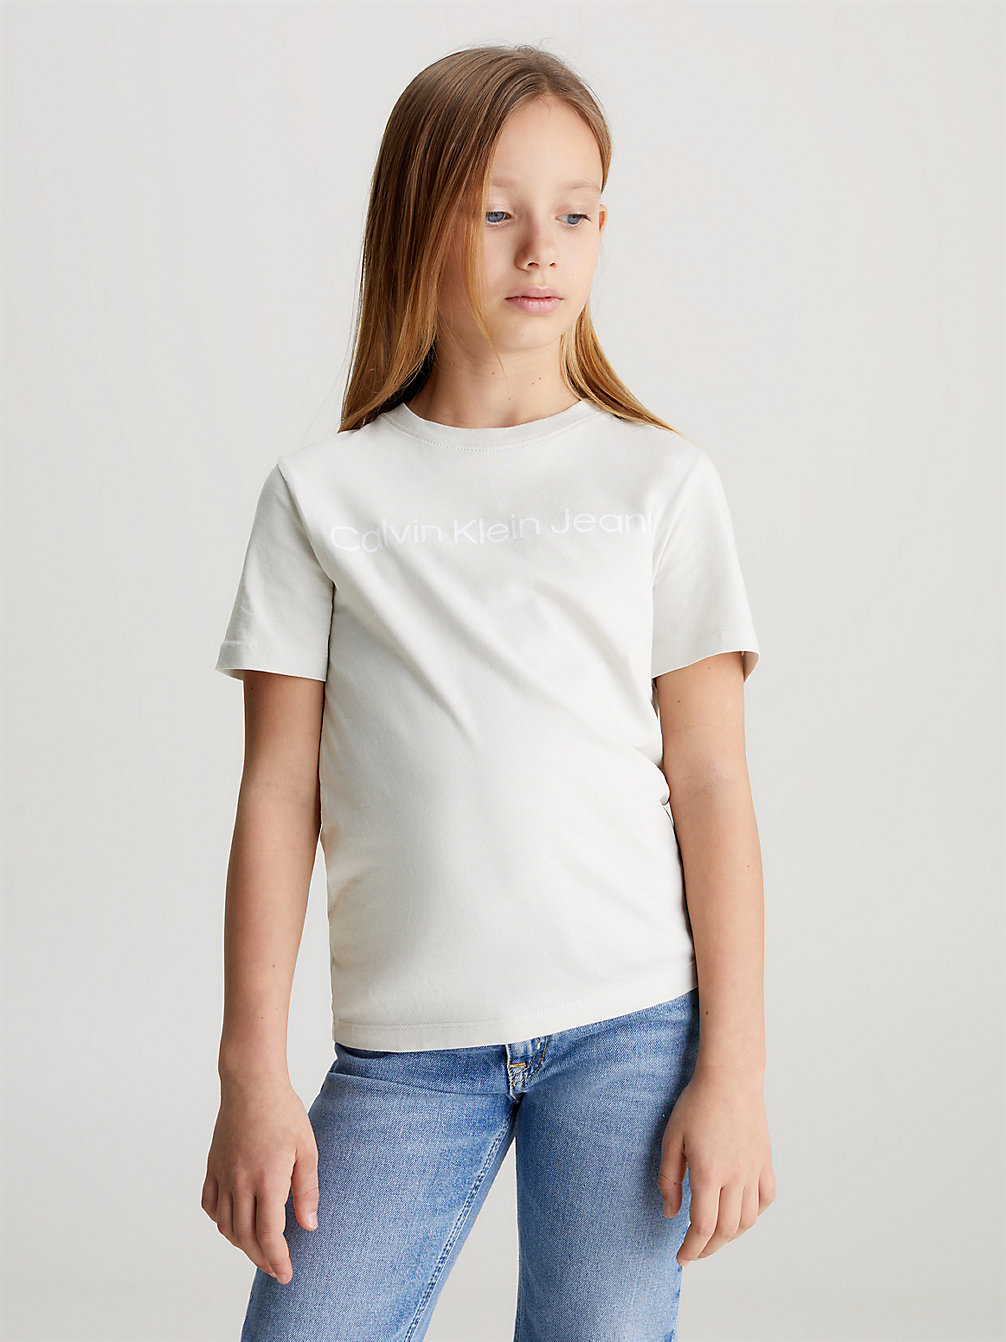 Camiseta Con Logo Infantil > LUNAR ROCK > undefined Unisex infantil > Calvin Klein